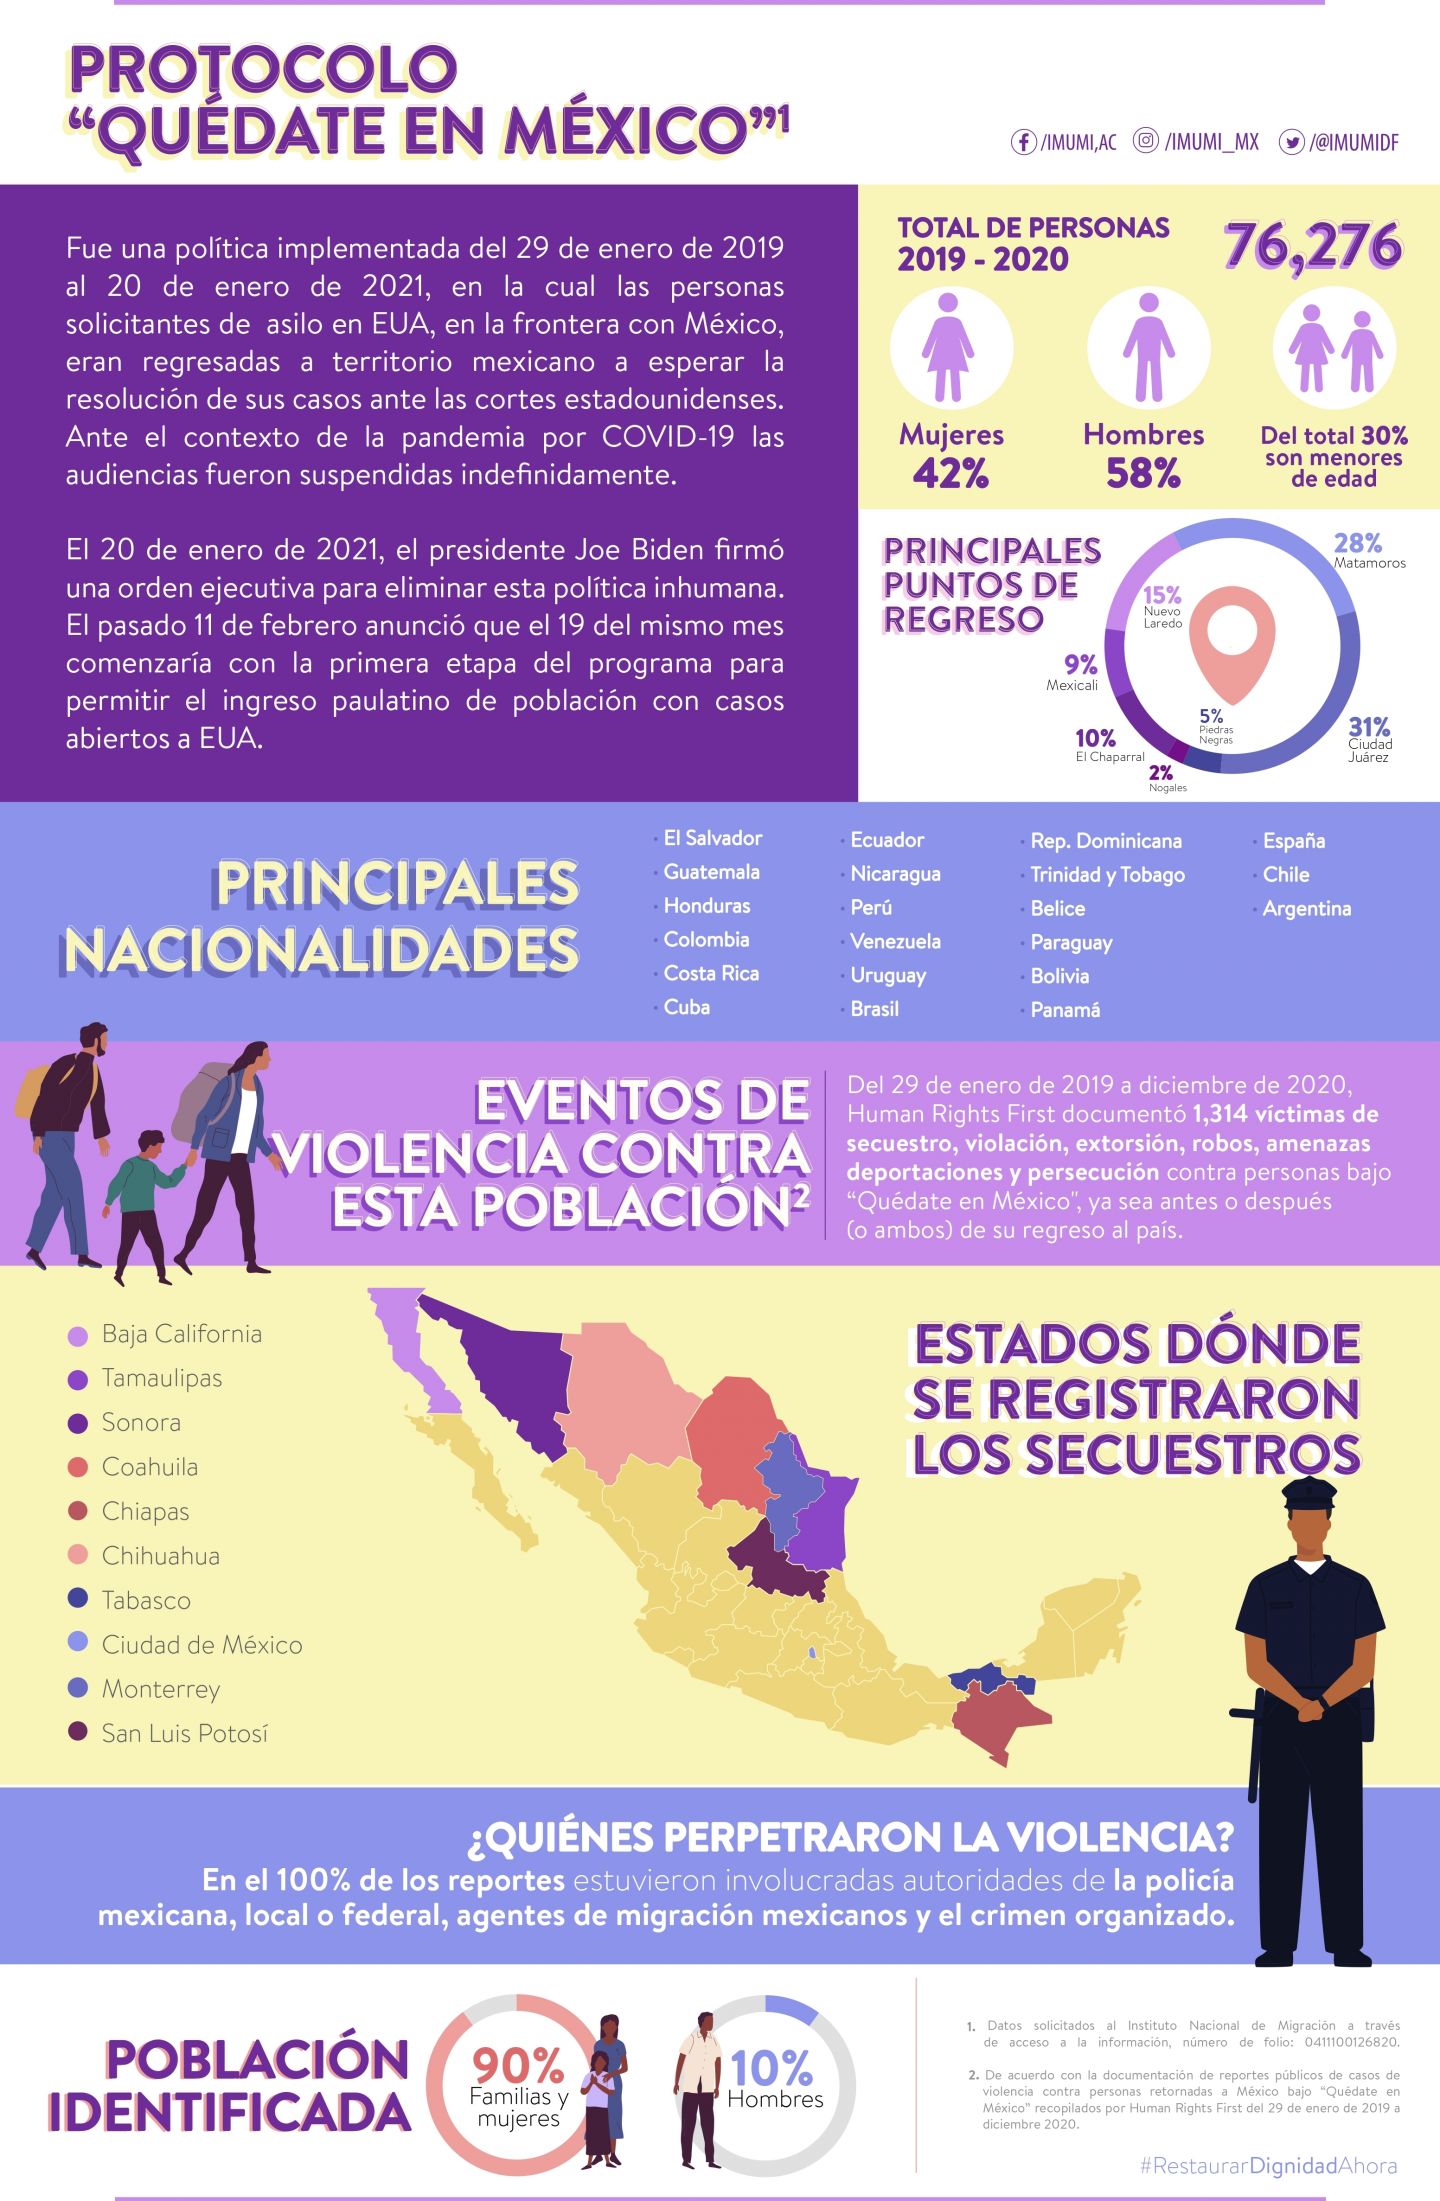 México debe restaurar la dignidad de las personas bajo ’Quédate en Mexico’